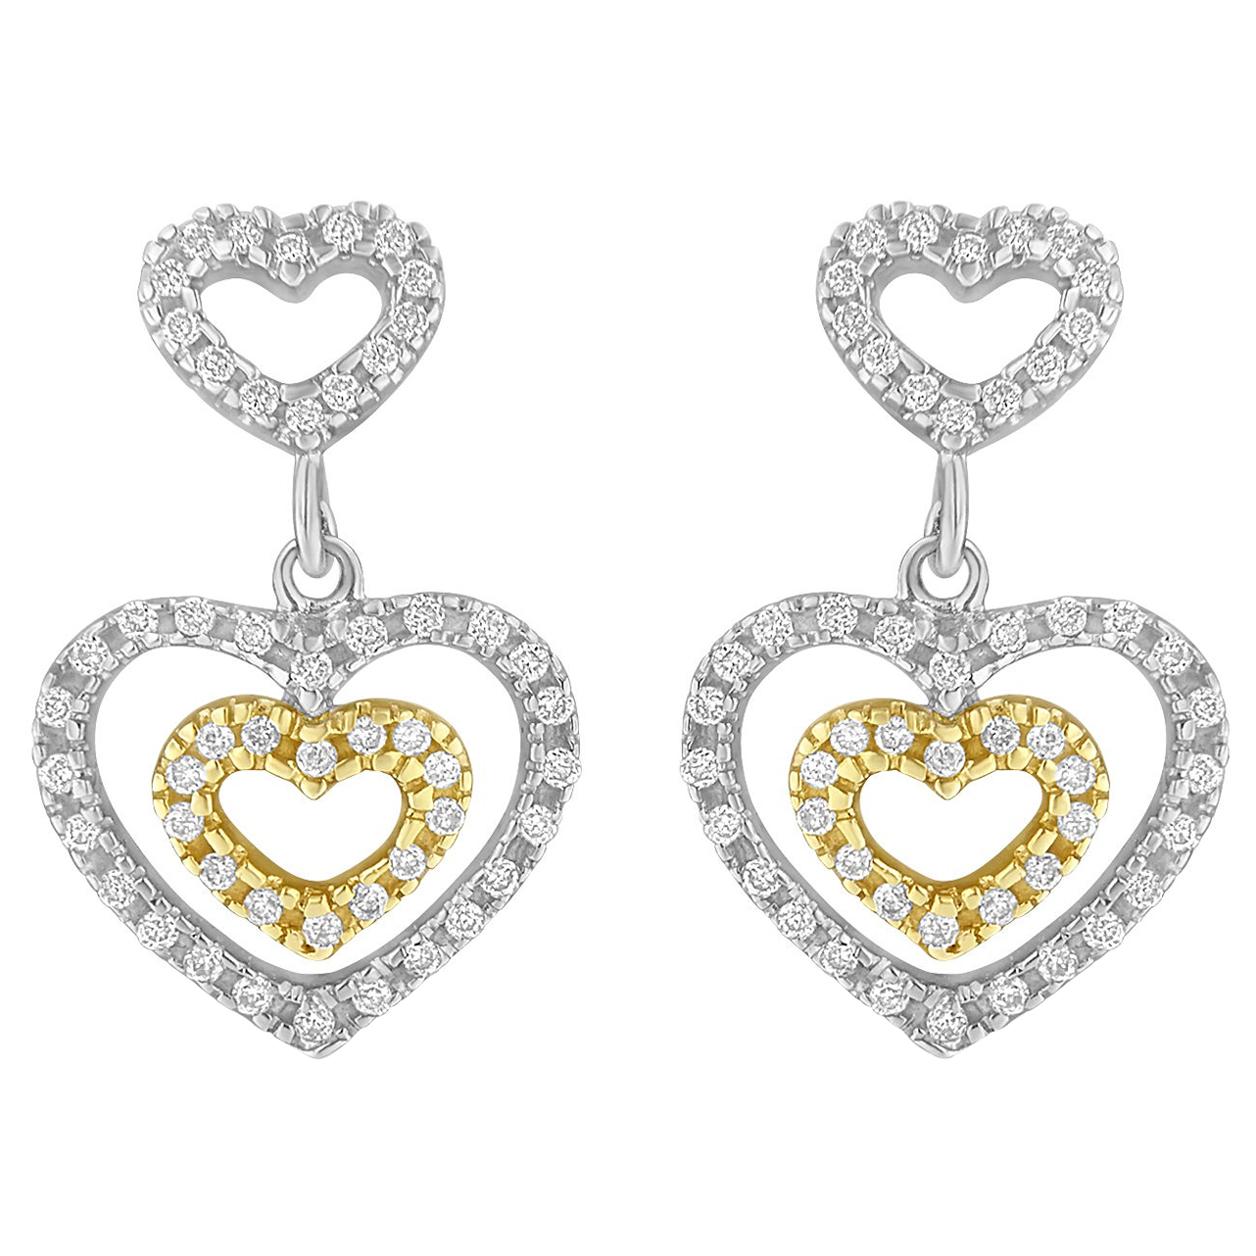 Pendants d'oreilles en or 14 carats avec diamants bicolores de 1/2 carat taillés en rond